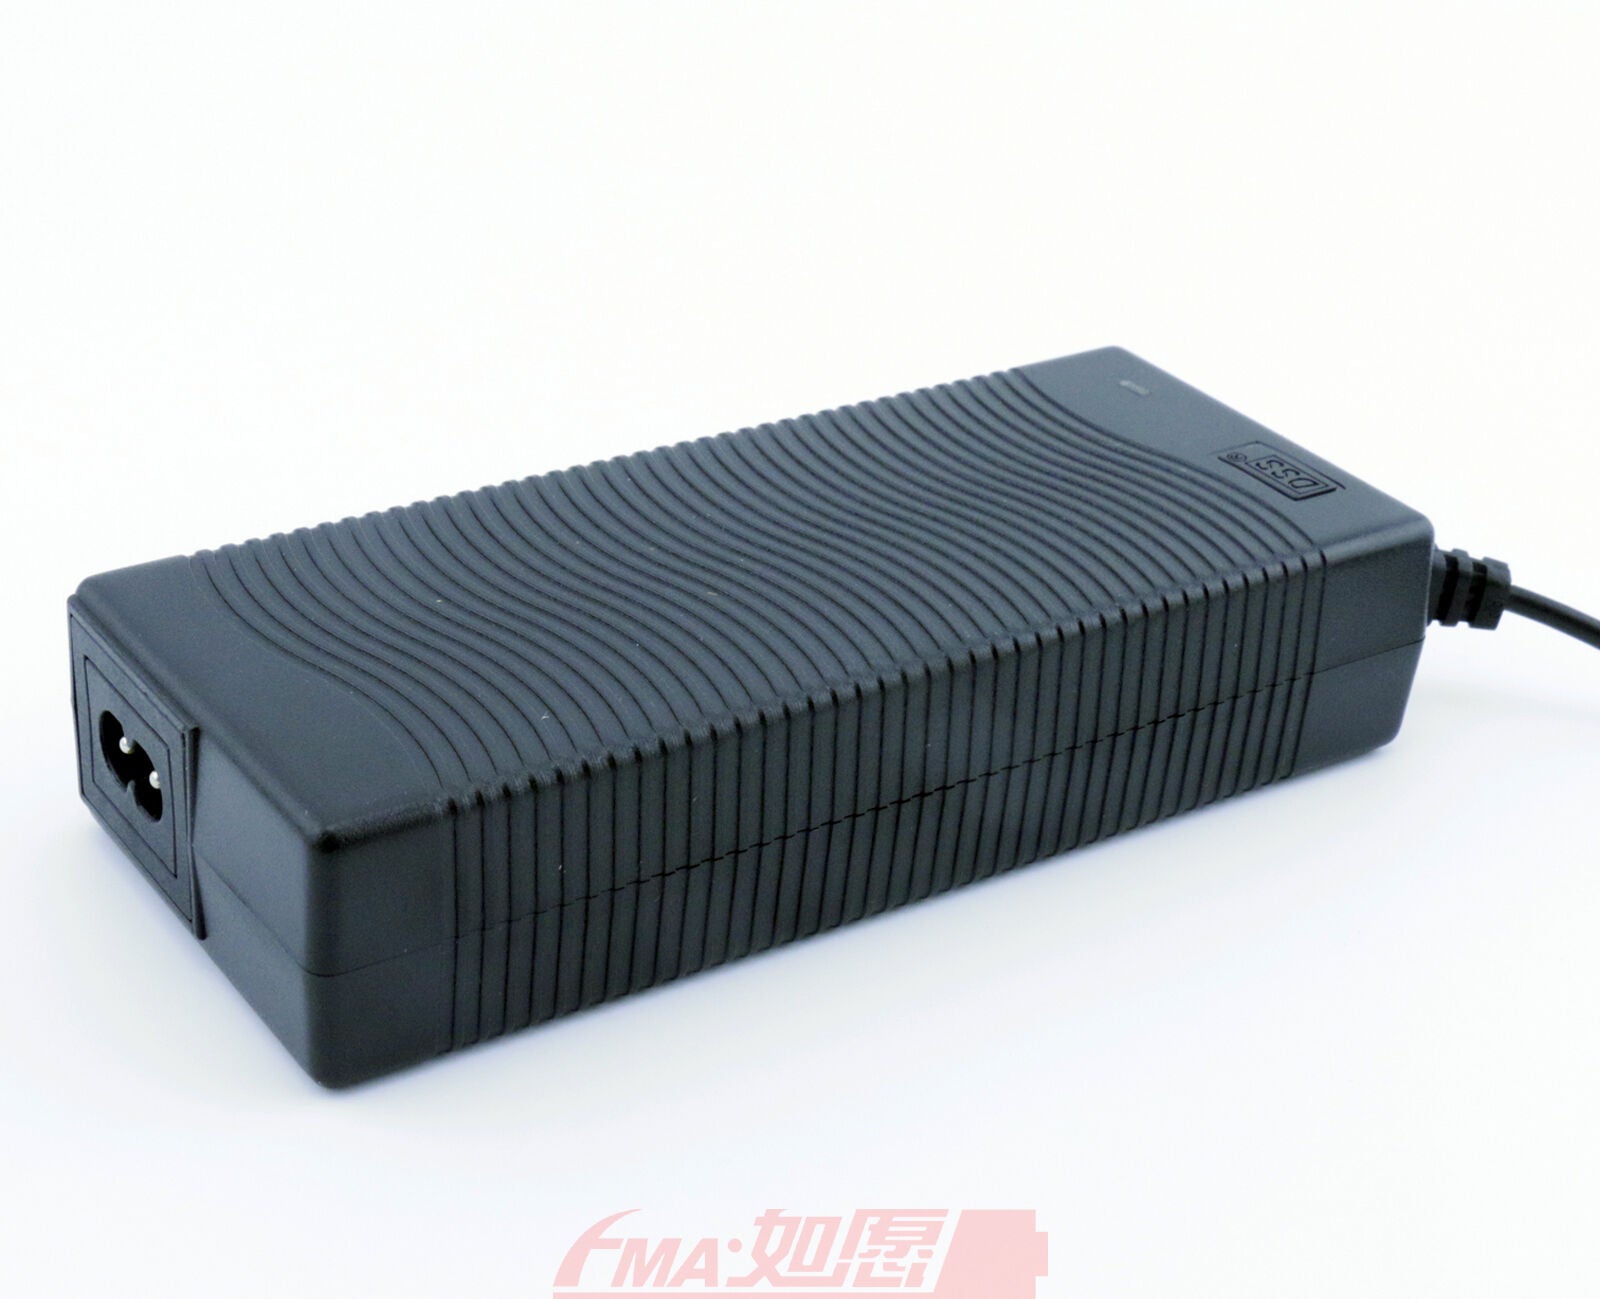 Smart Charger 54.6V 2A for 13S 46.8V LiIon LiPo 15S 48V Li-Fe Battery